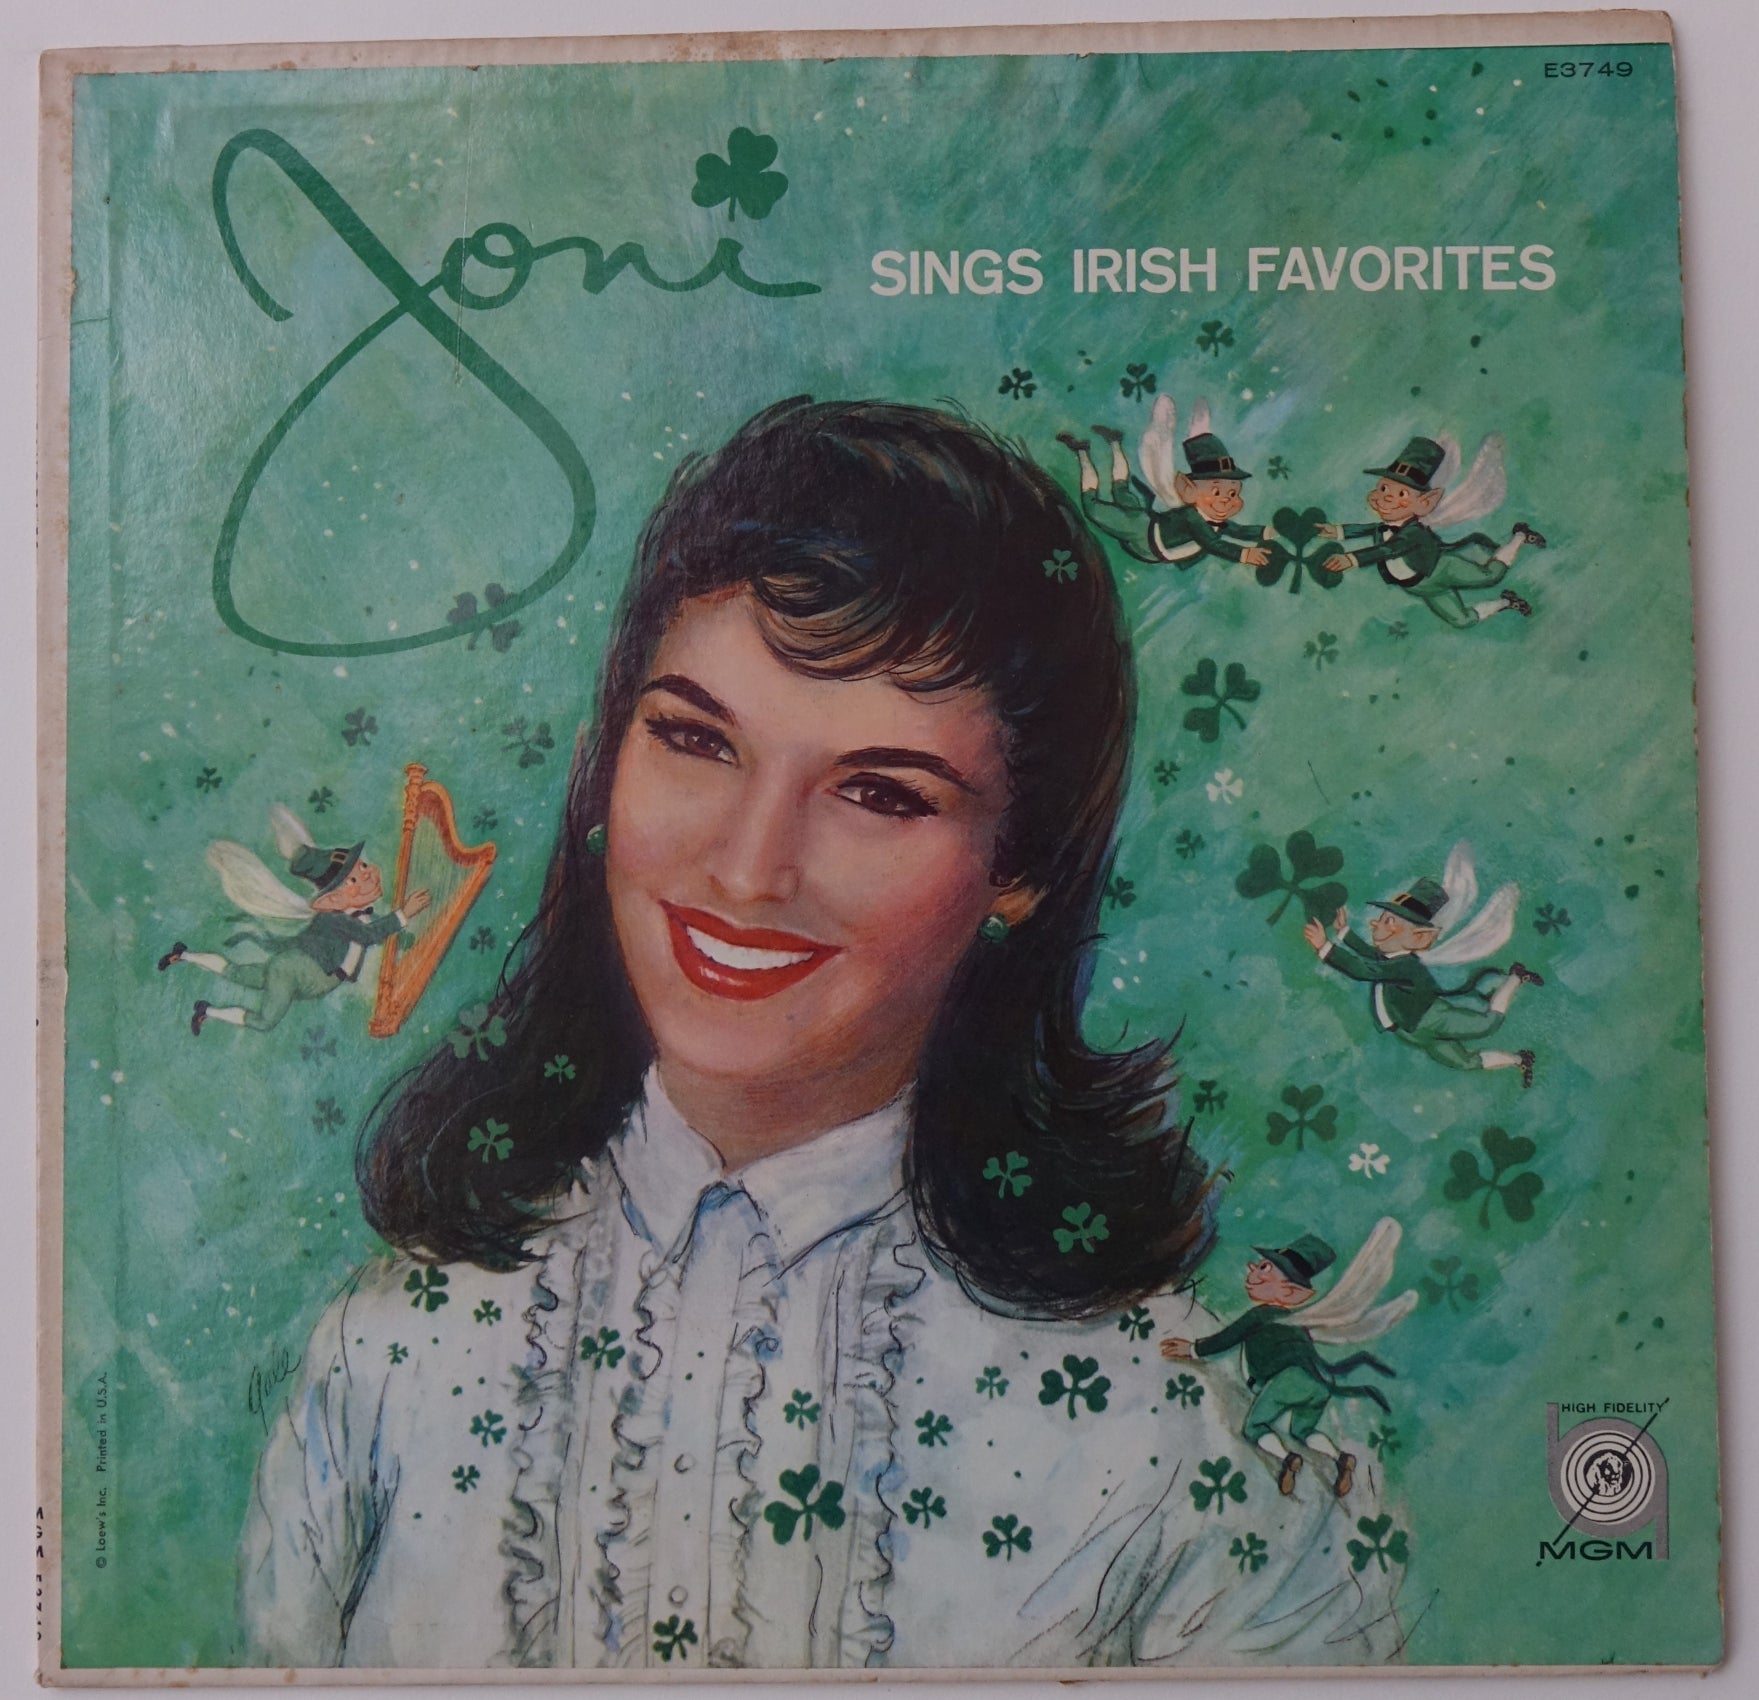 MGM001: Joni Sings Irish Favorites